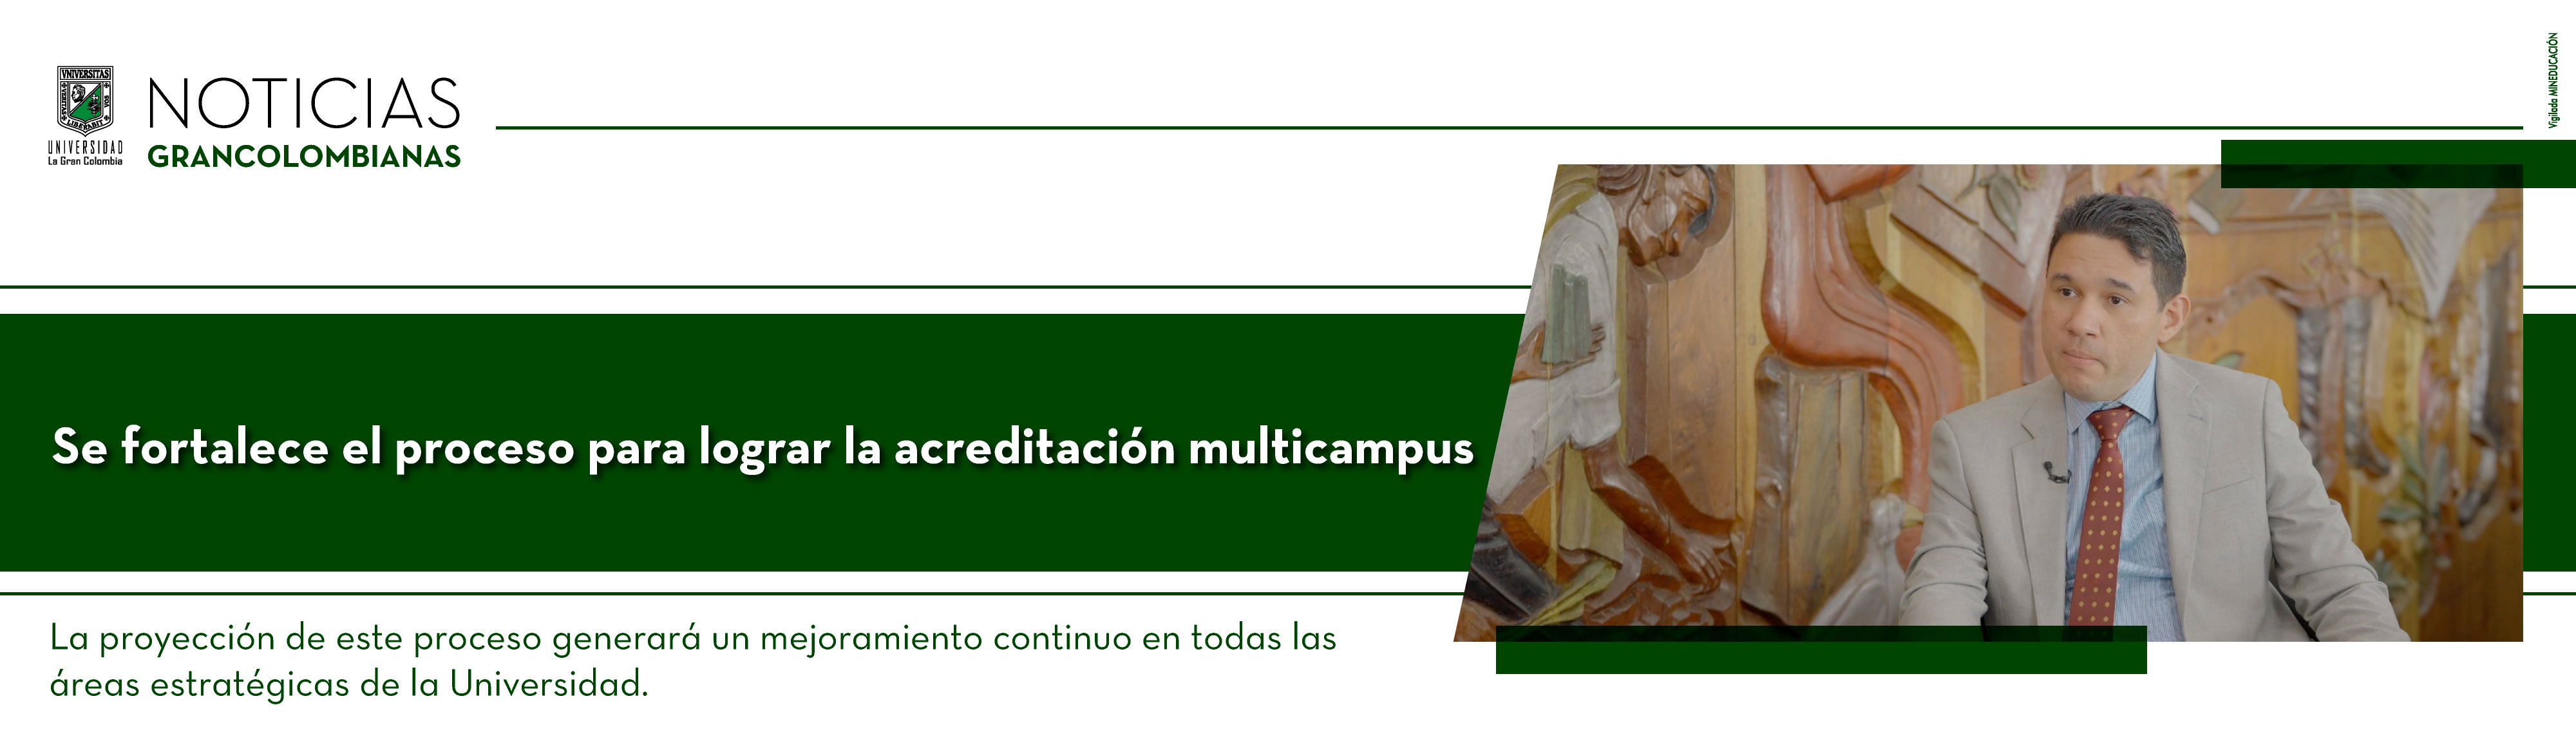 La Universidad La Gran Colombia fortalece su proceso para lograr la acreditación Multicampus